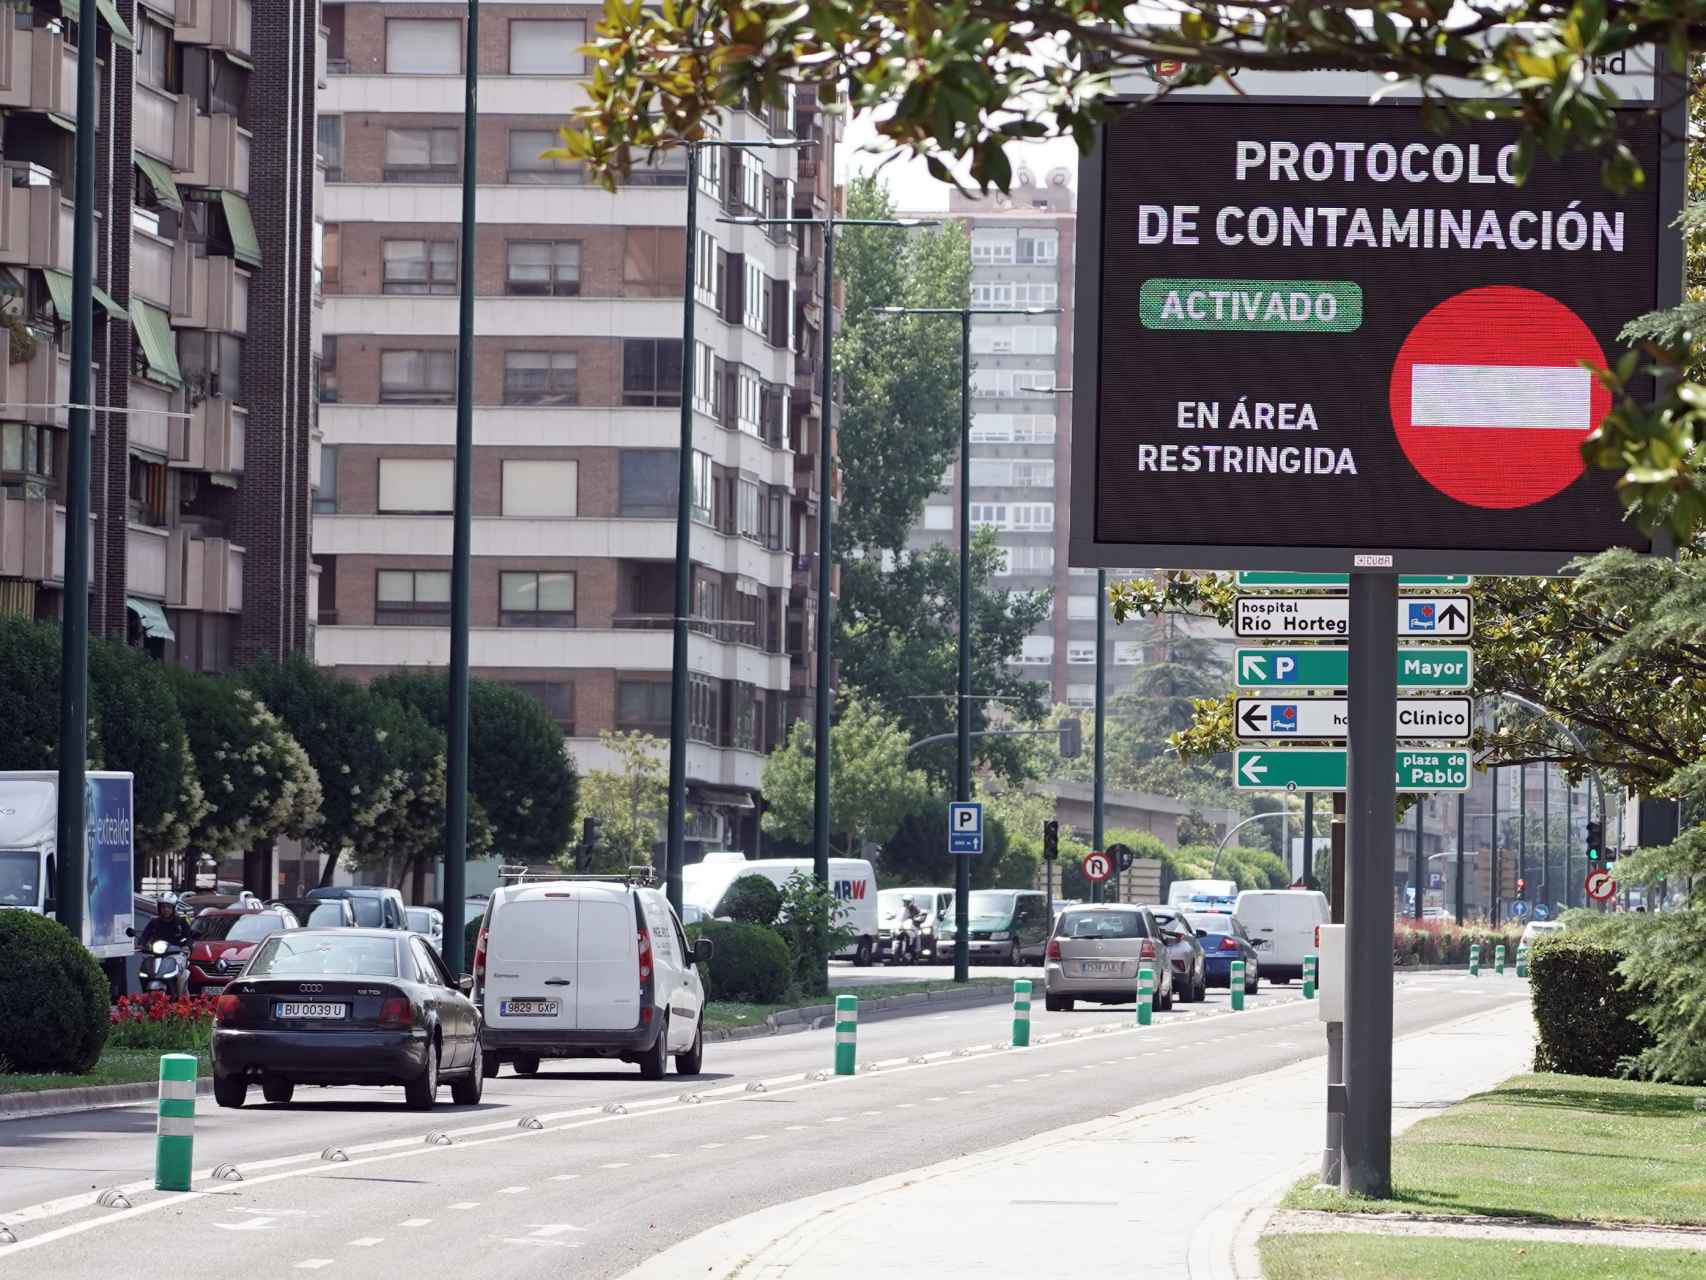 Un aviso del Protocolo de Contaminación en Valladolid, el pasado mes de julio.